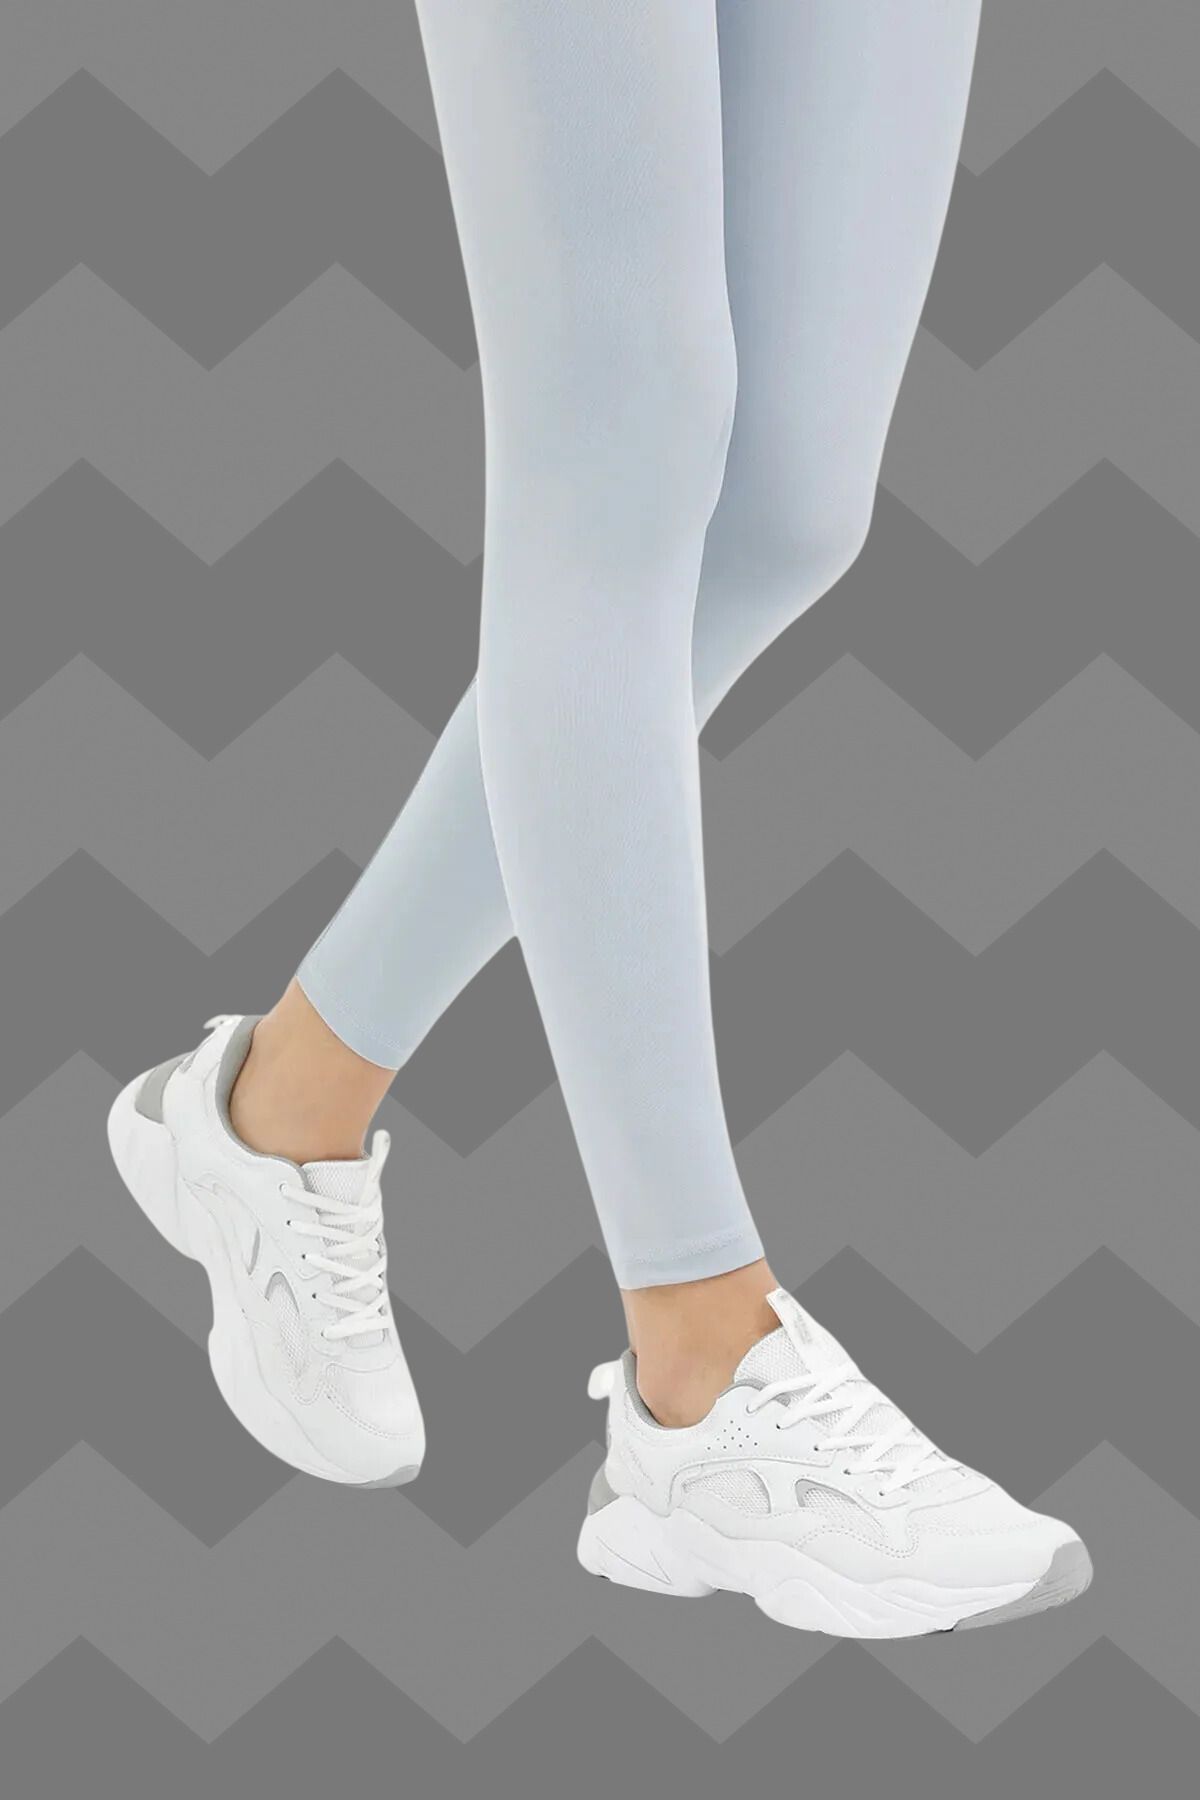 Lumberjack Beyaz/Kum Kadın Sneaker Casual Günlük Spor Ayakkabı